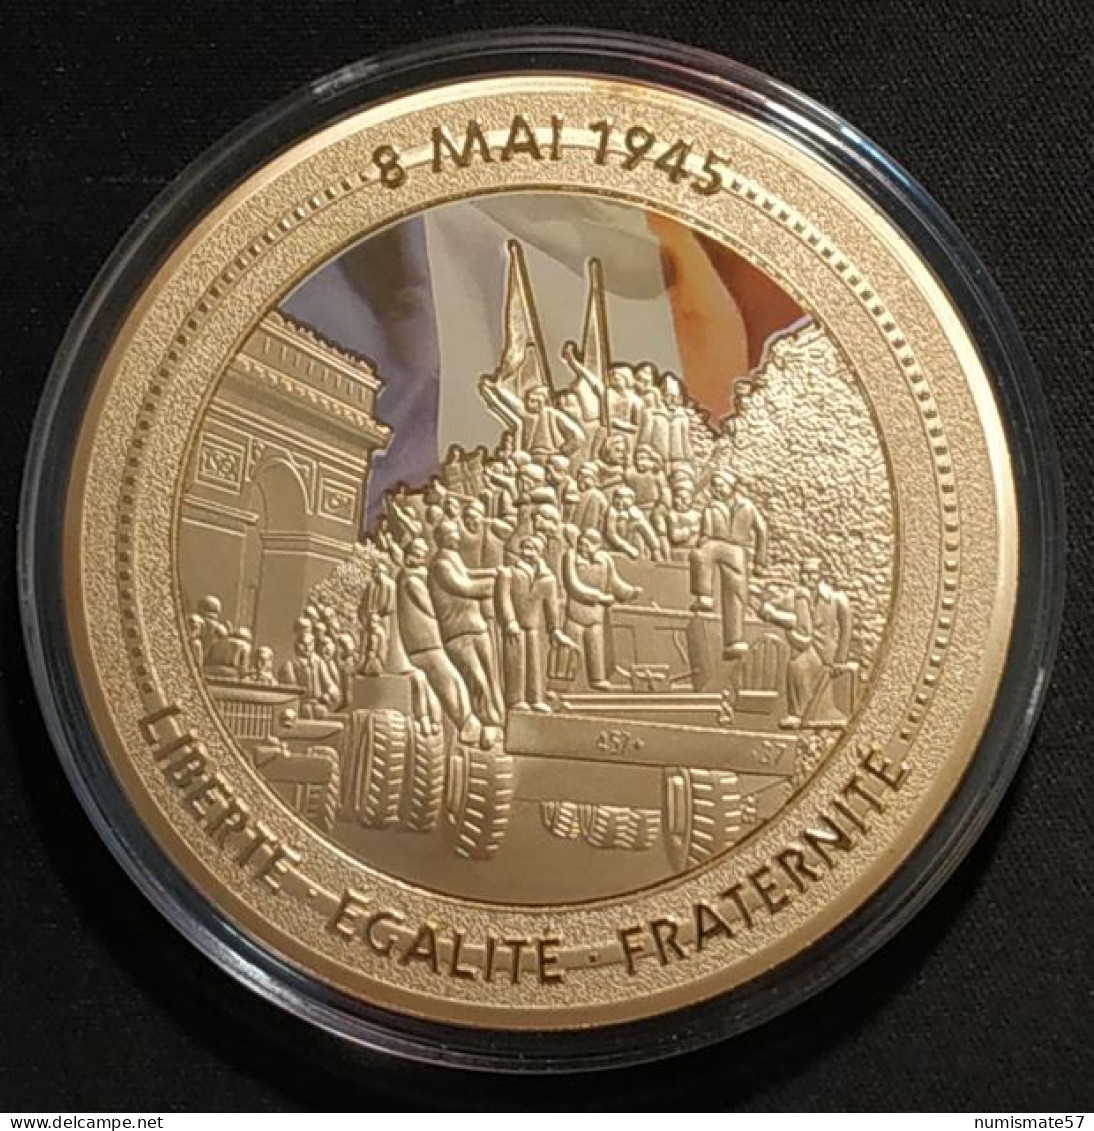 Médaille 8 Mai 1945 - 70 ème Anniversaire Fin De La 2nde Guerre Mondiale - Cuivre Doré - Francia